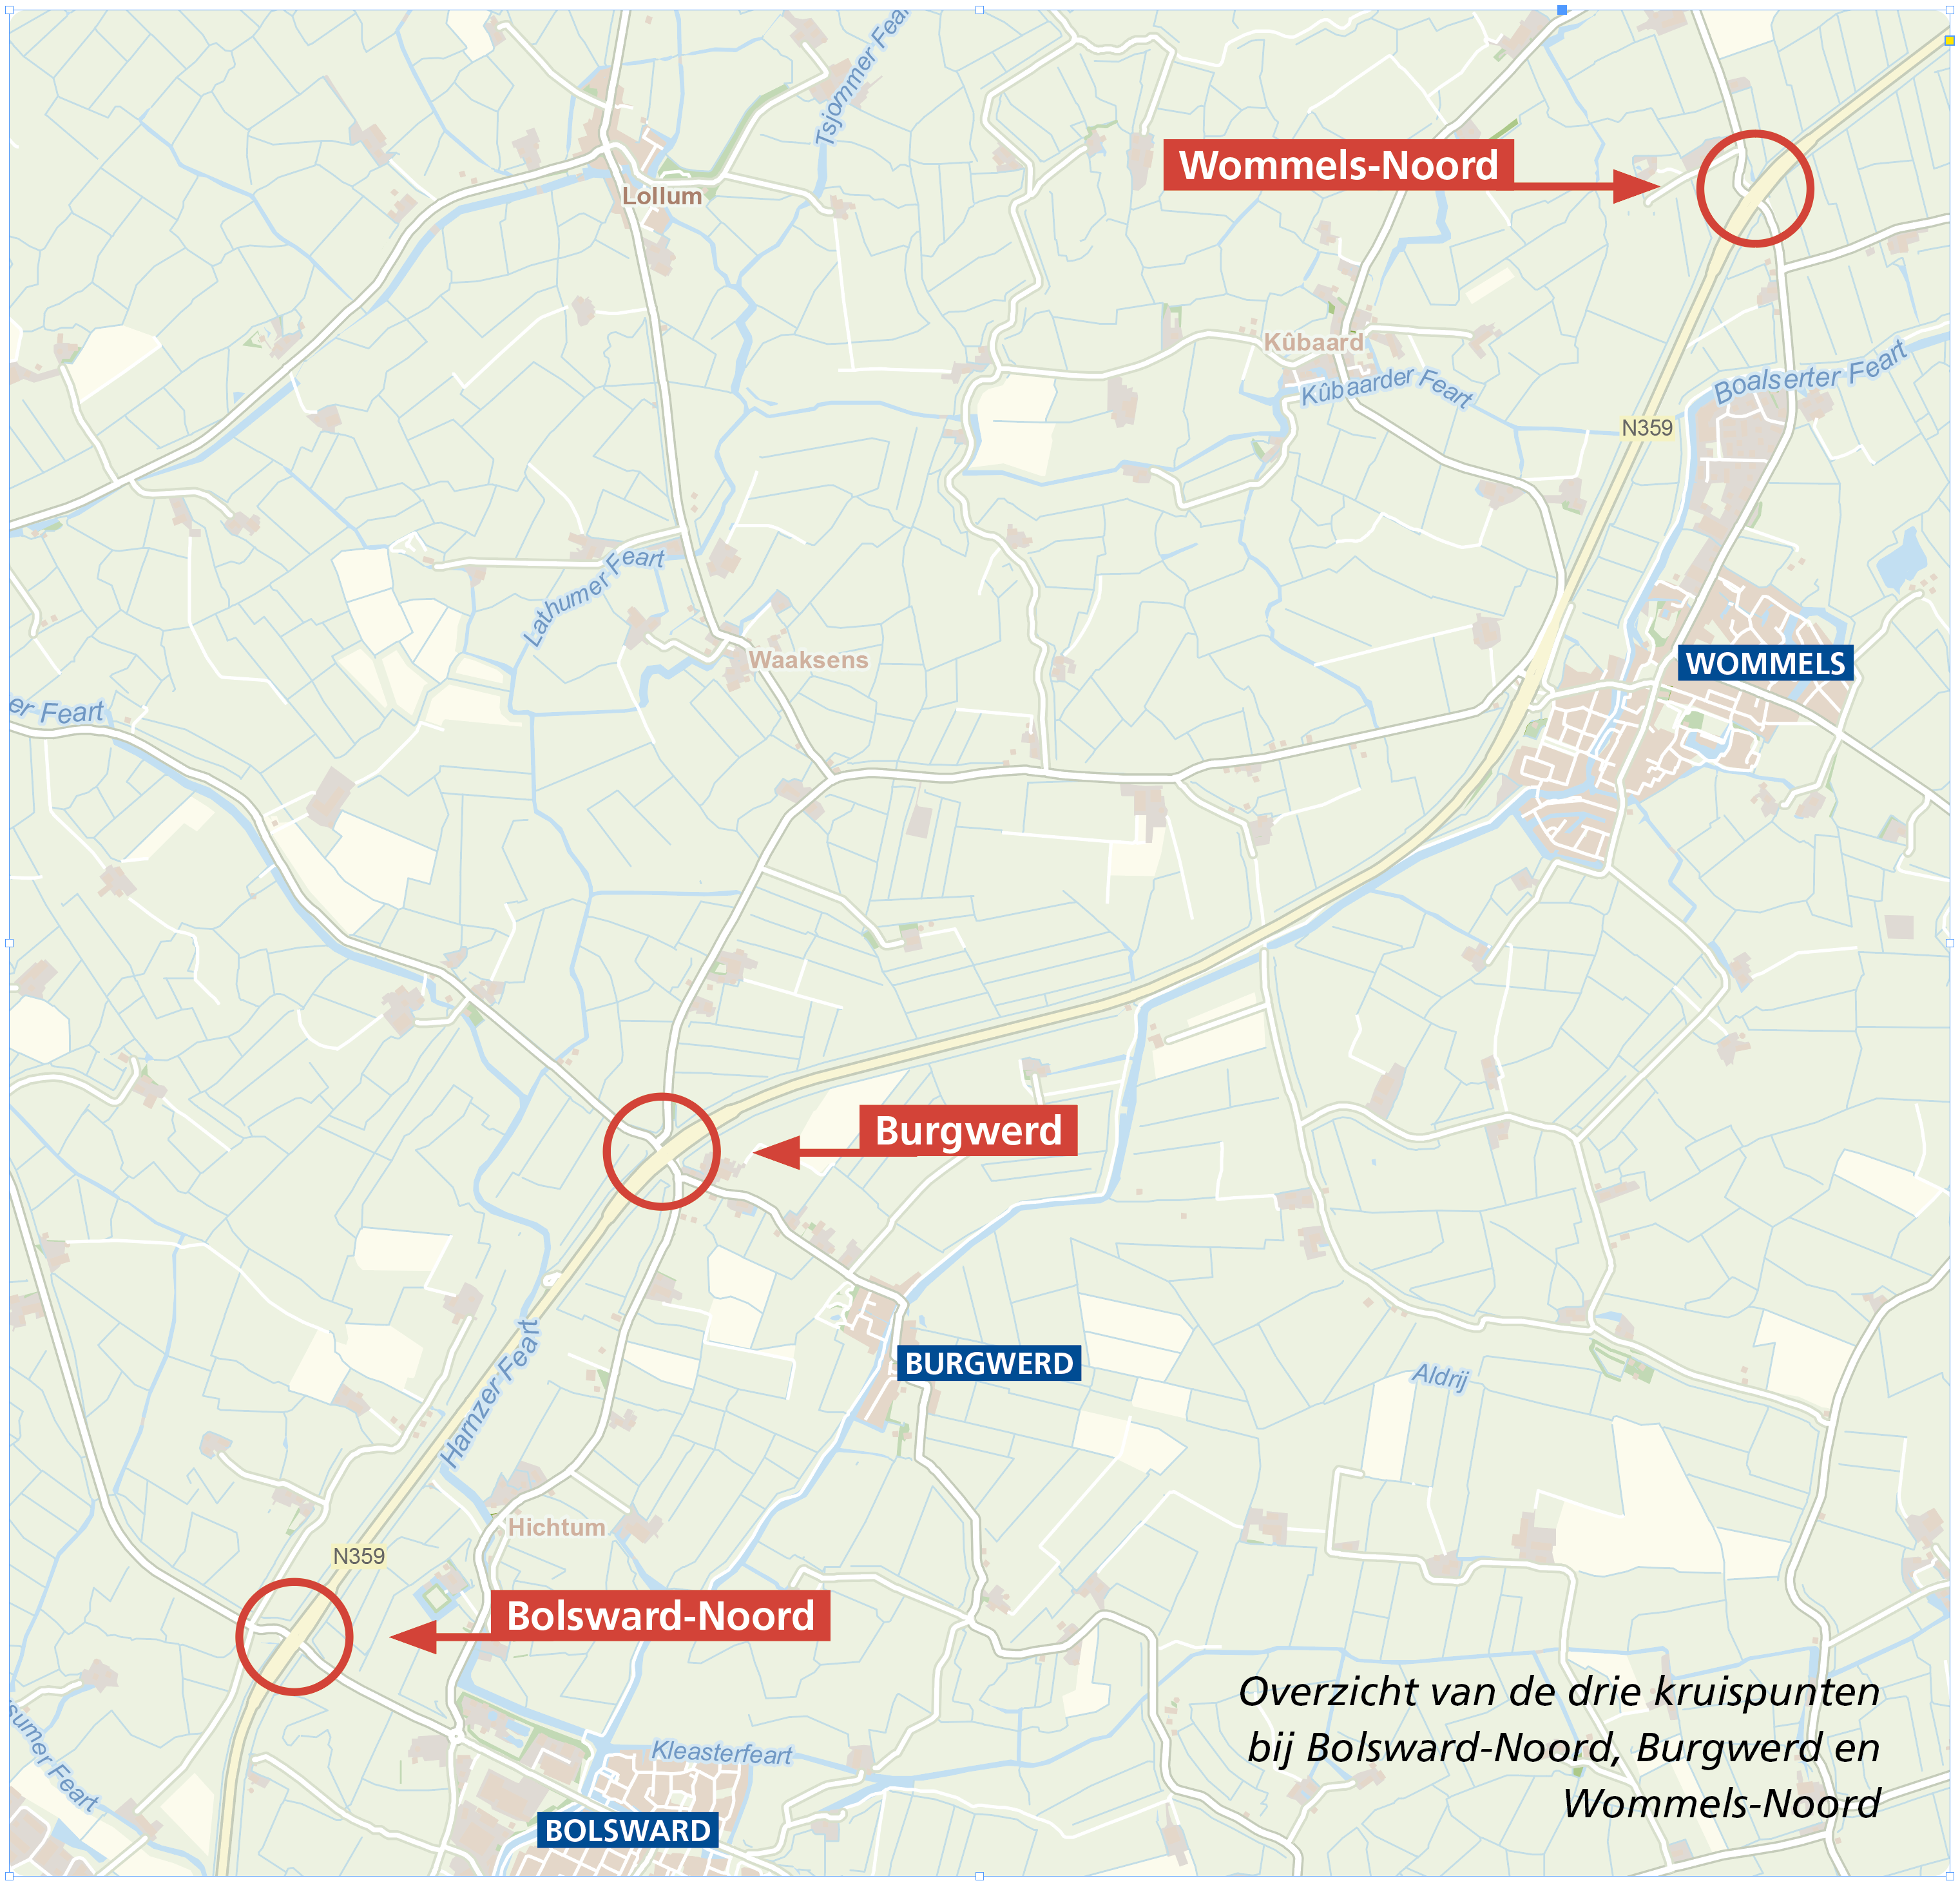 Overzicht van de drie kruispunten bij Bolsward-Noord, Burgwerd en Wommels-Noord.